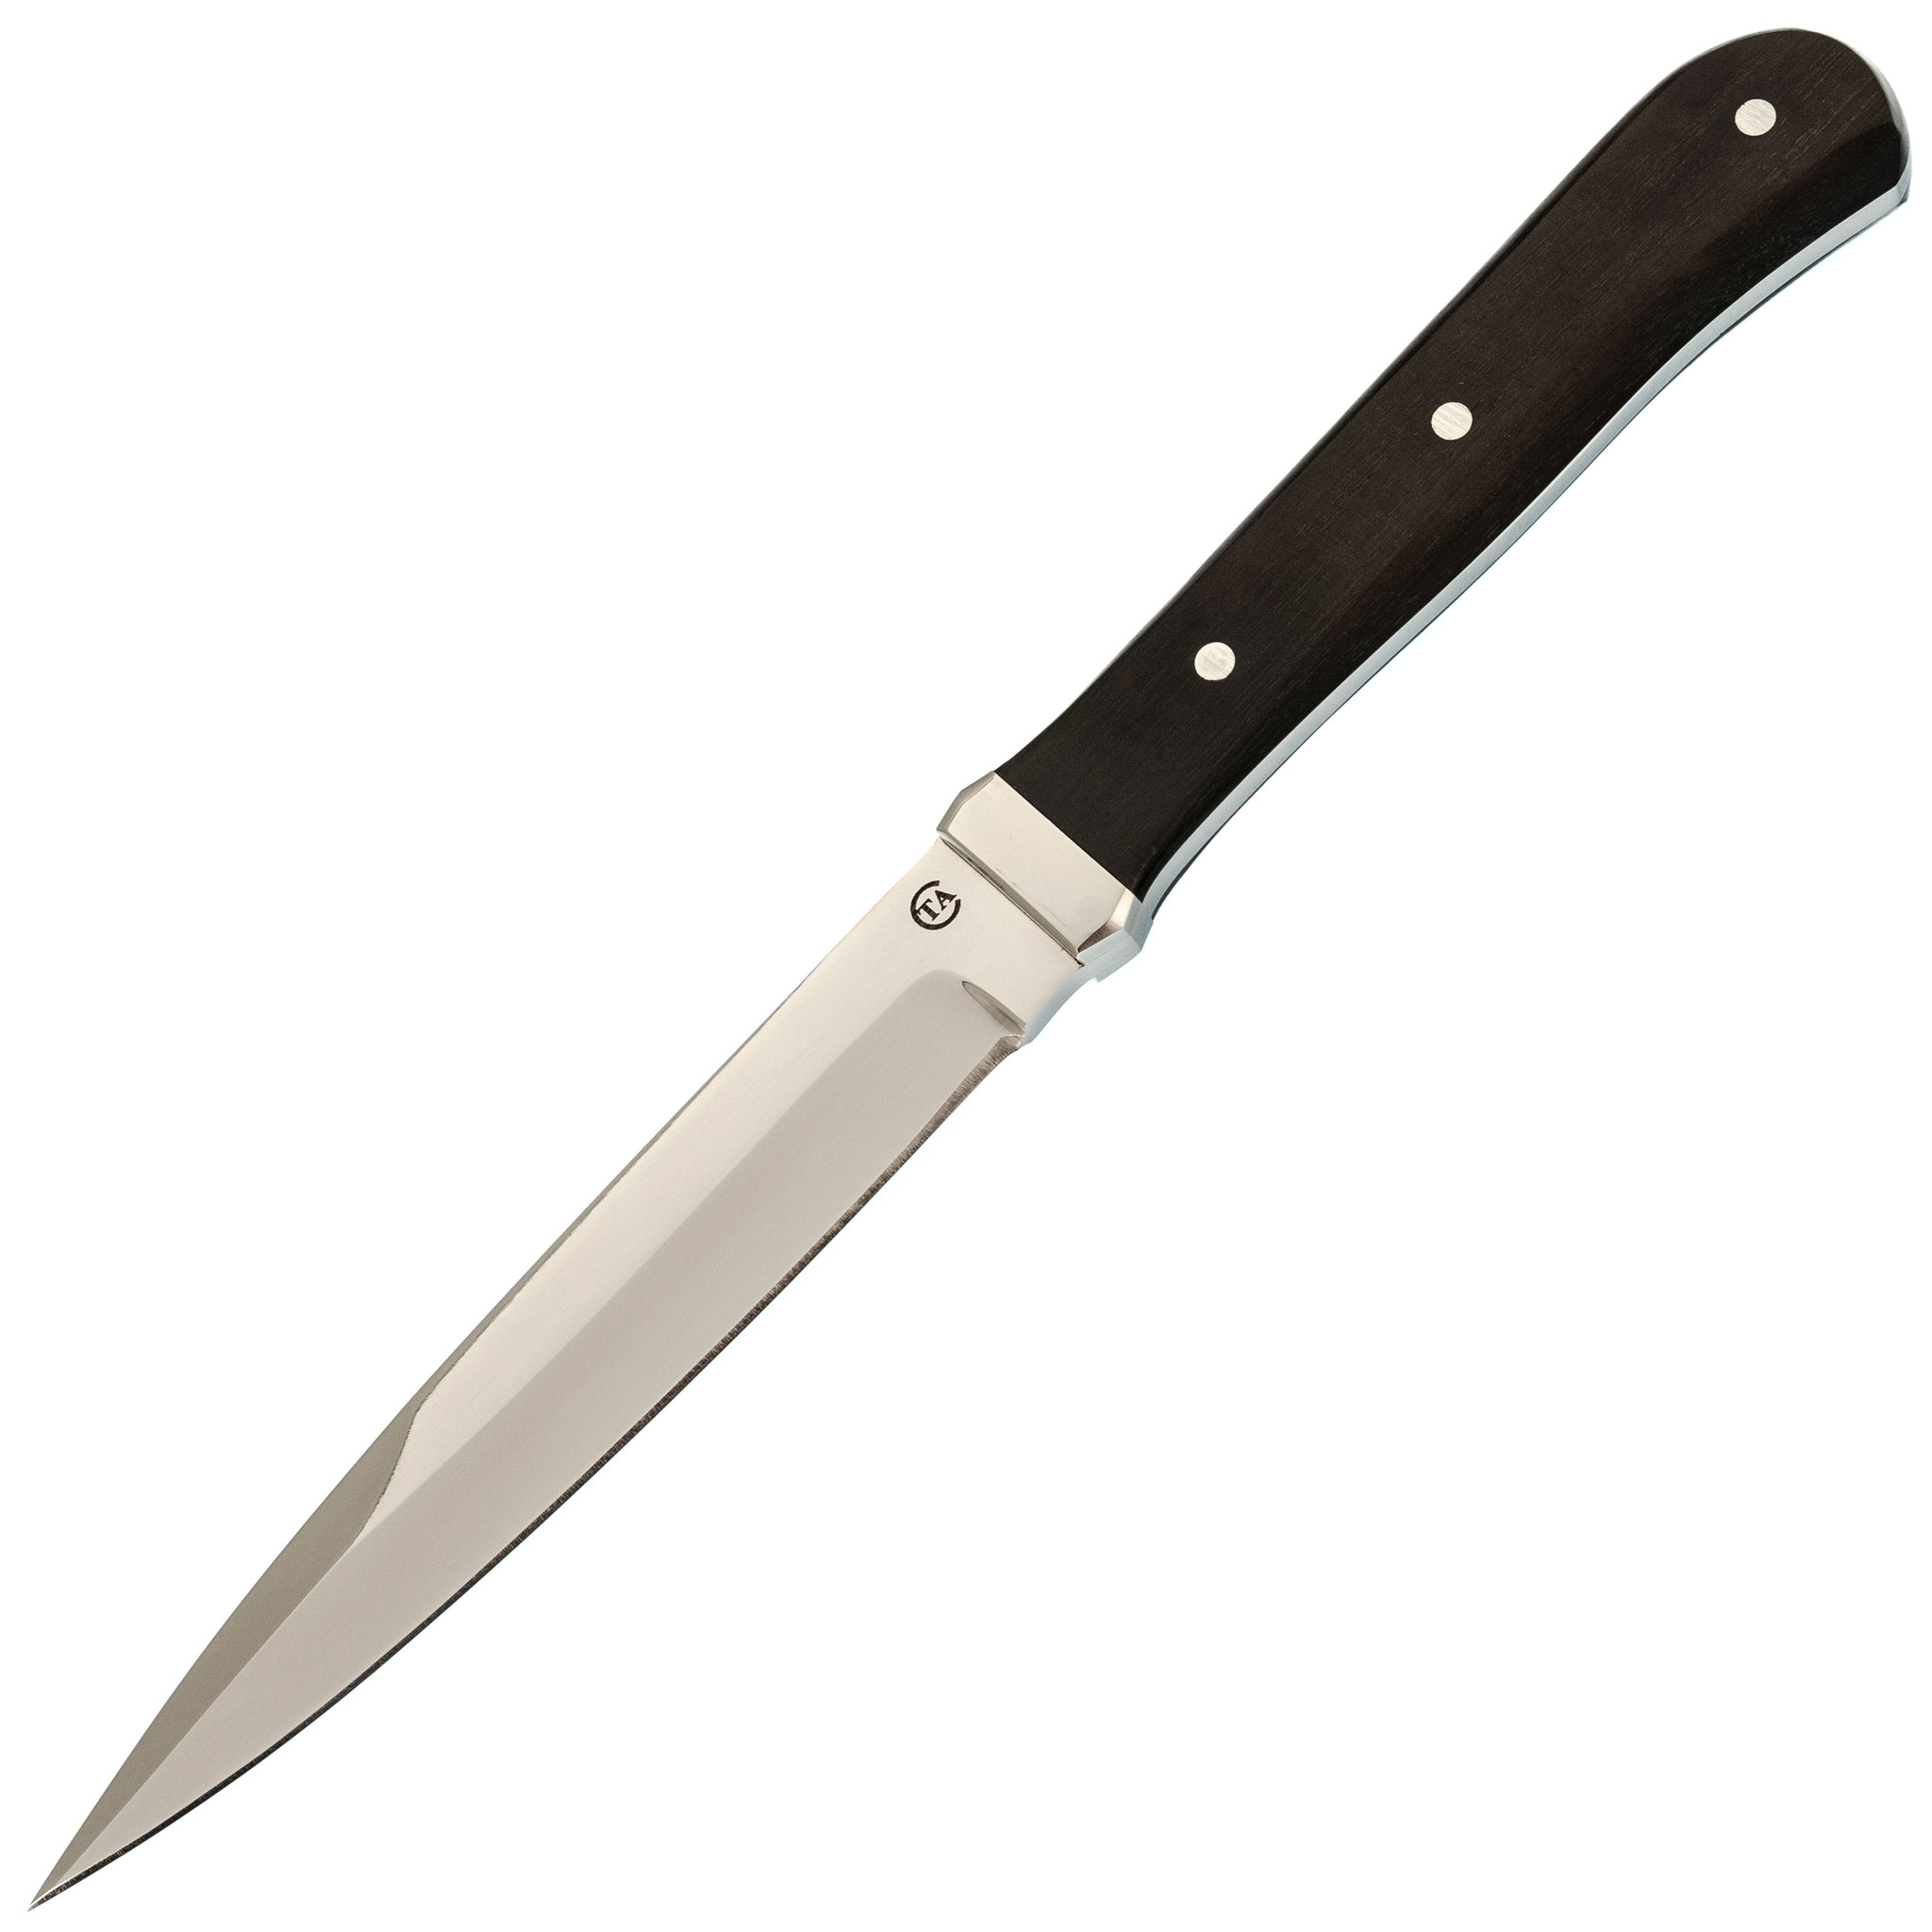 Нож НП-42, сталь 95х18, граб нож спецназ вишня сталь 95х18 резной граб